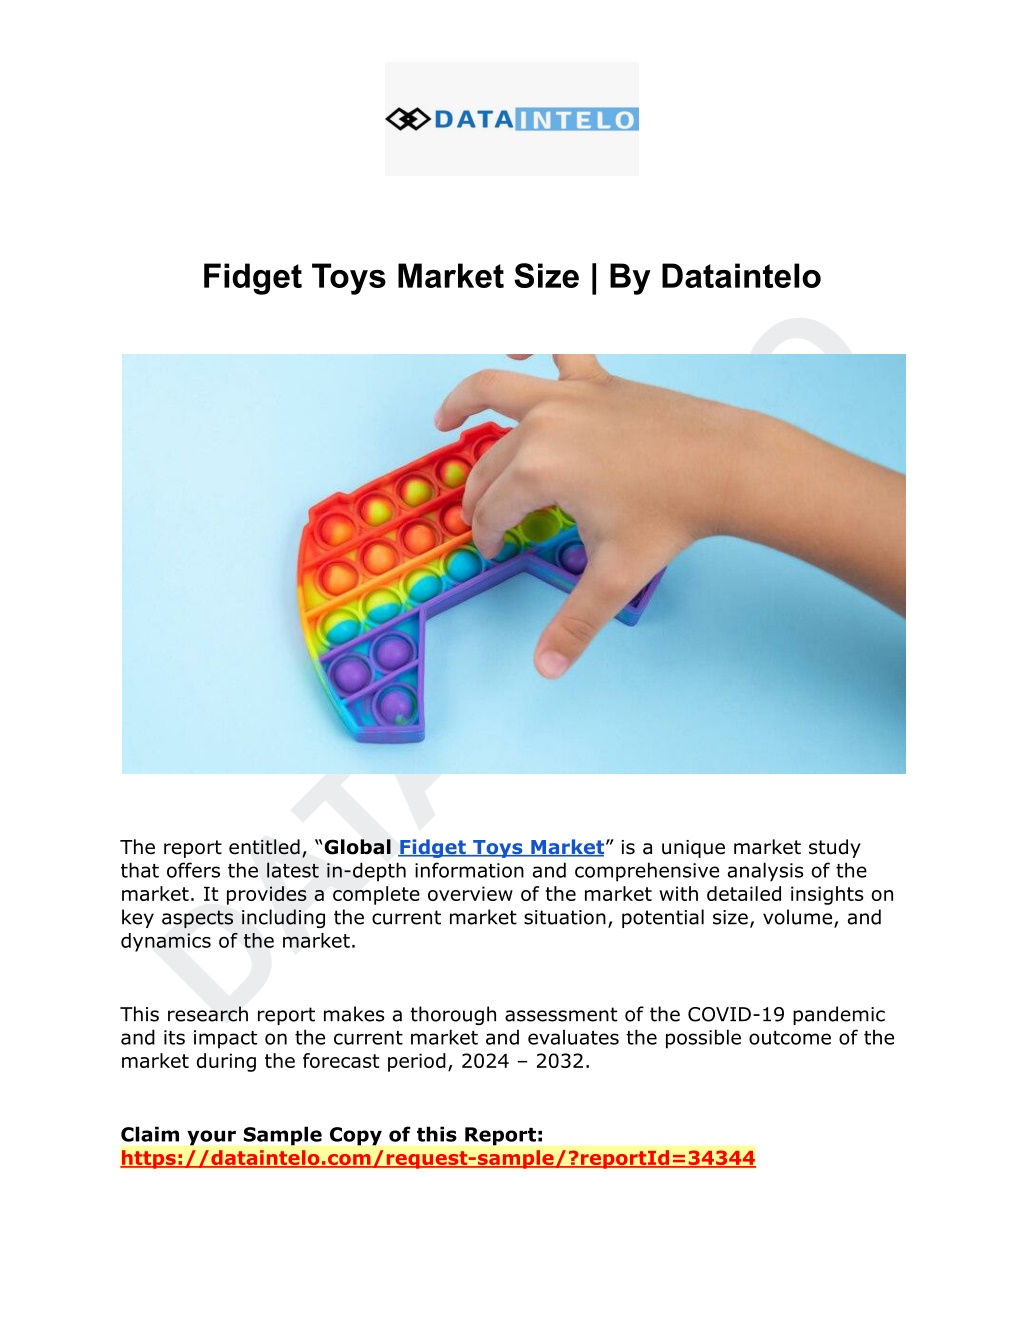 fidget toys market size by dataintelo l.w